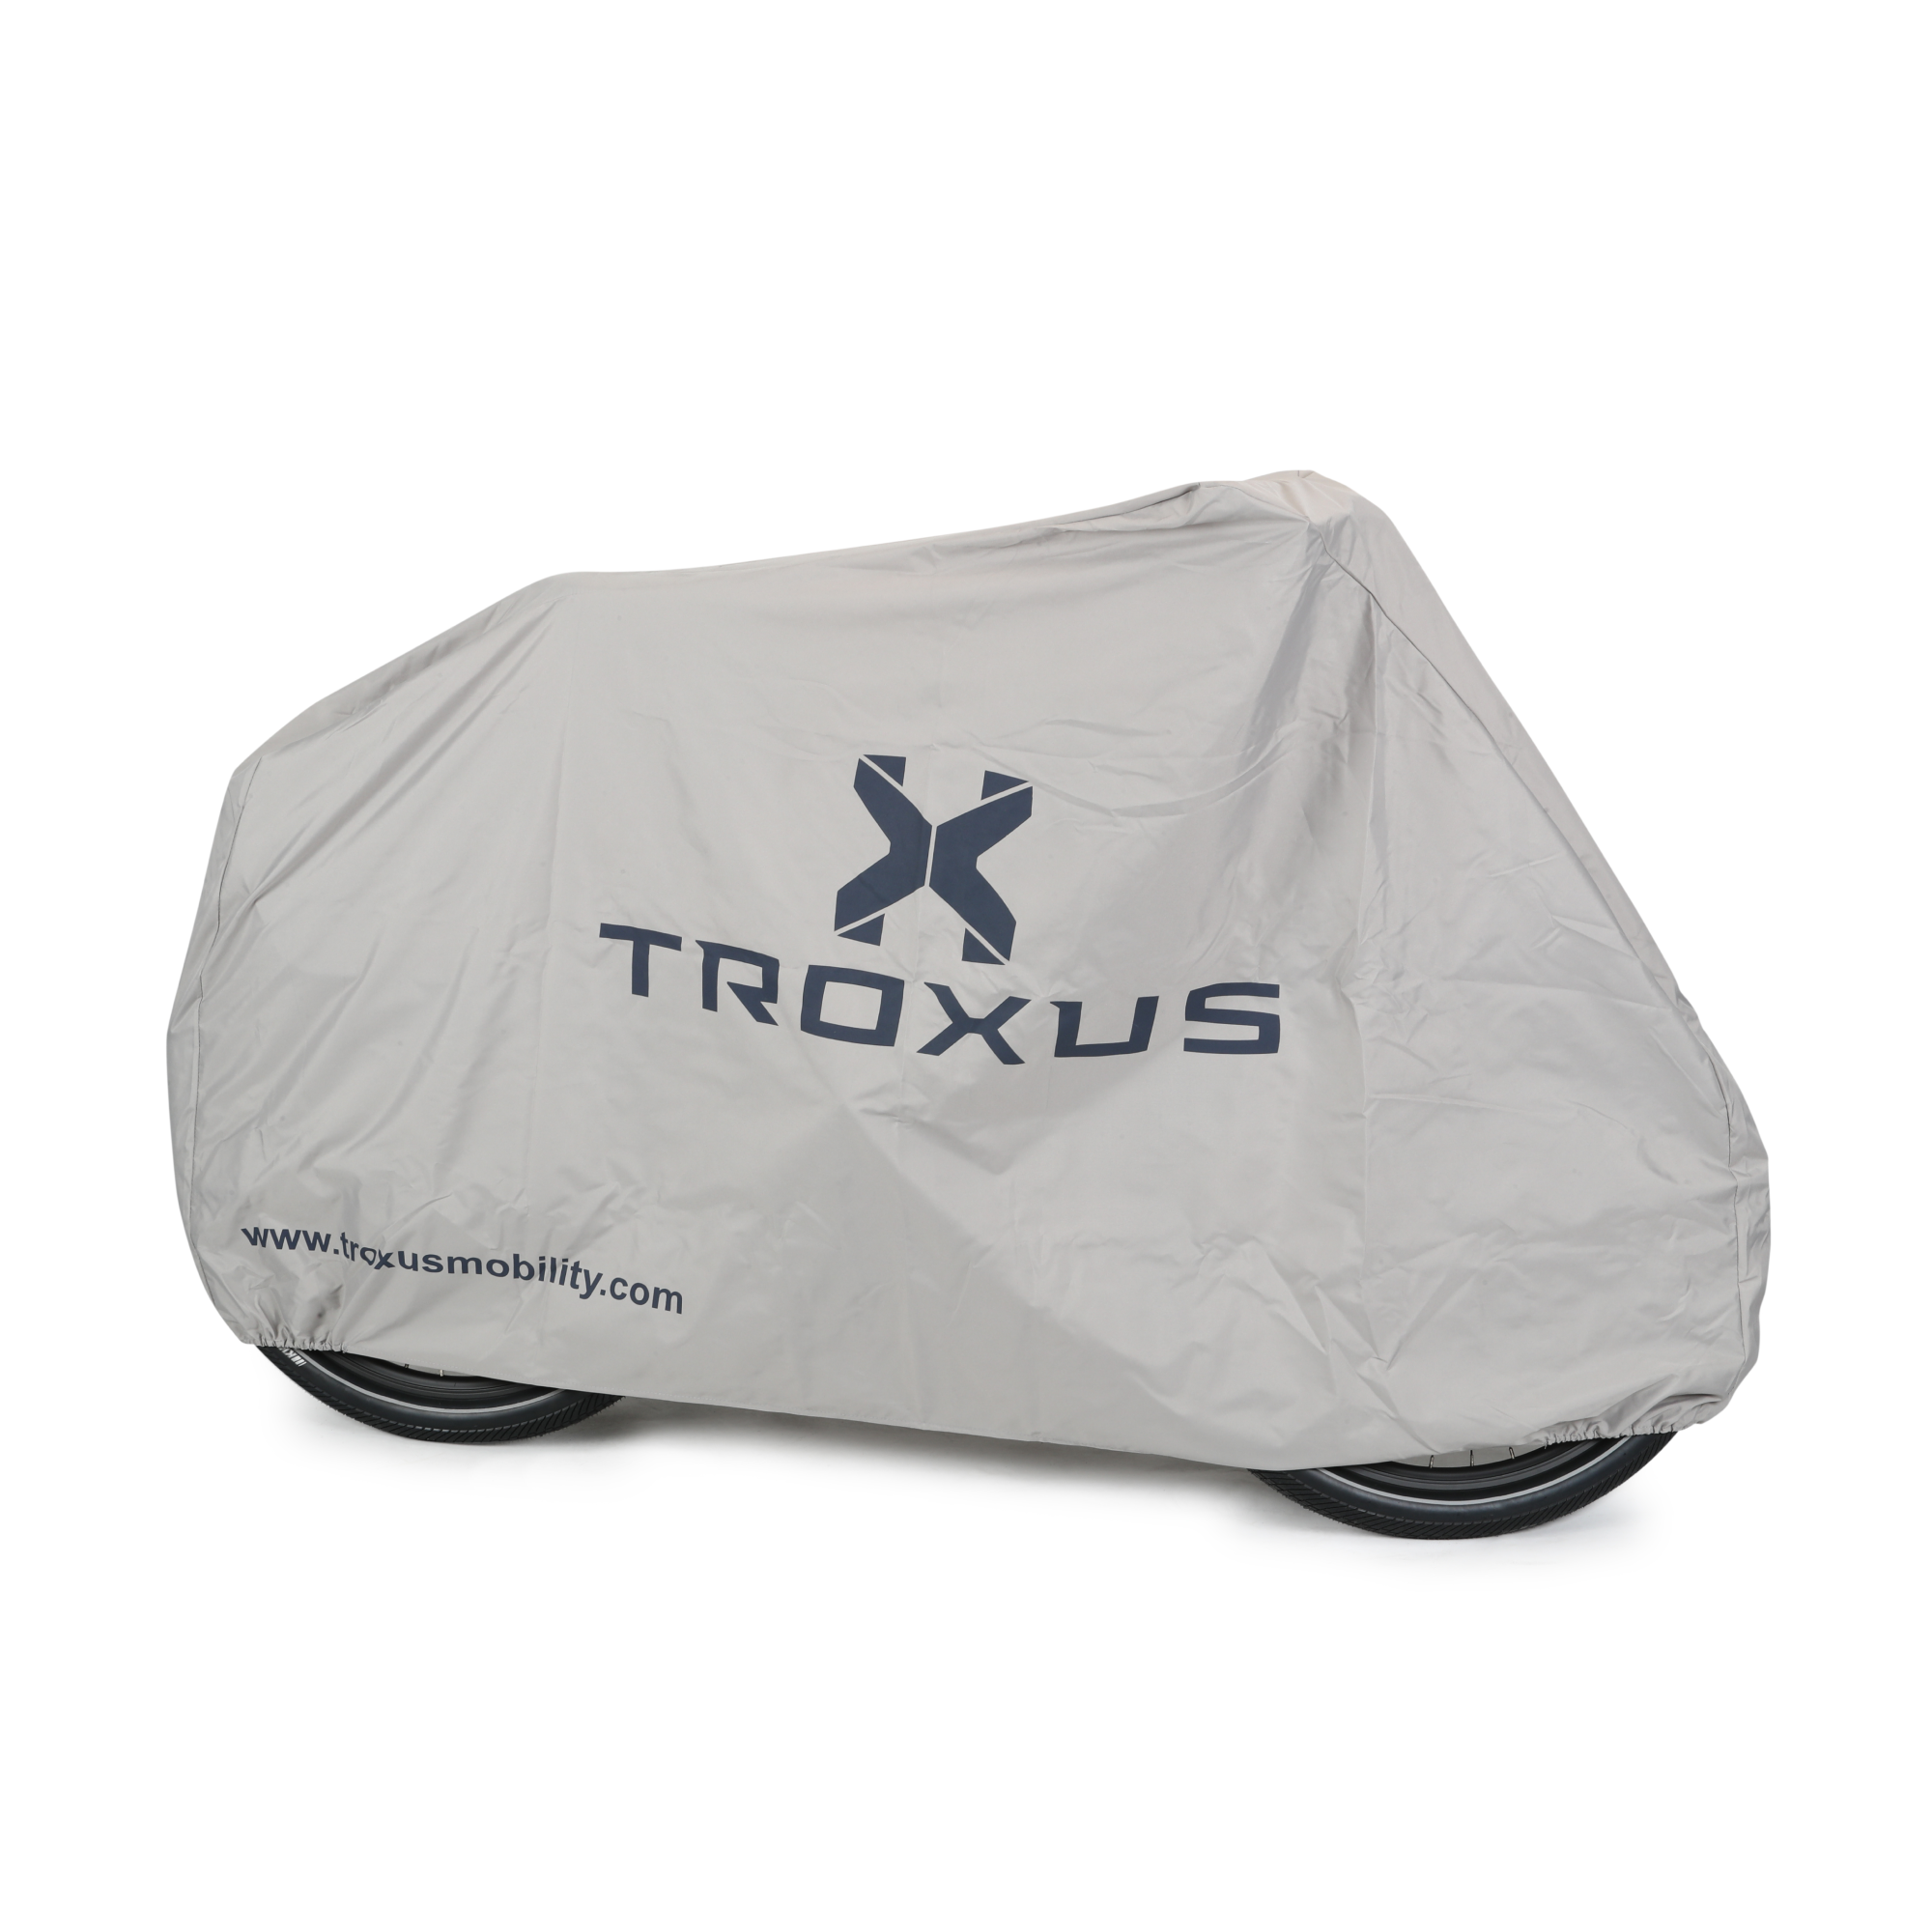 Troxus Bicycle Cover